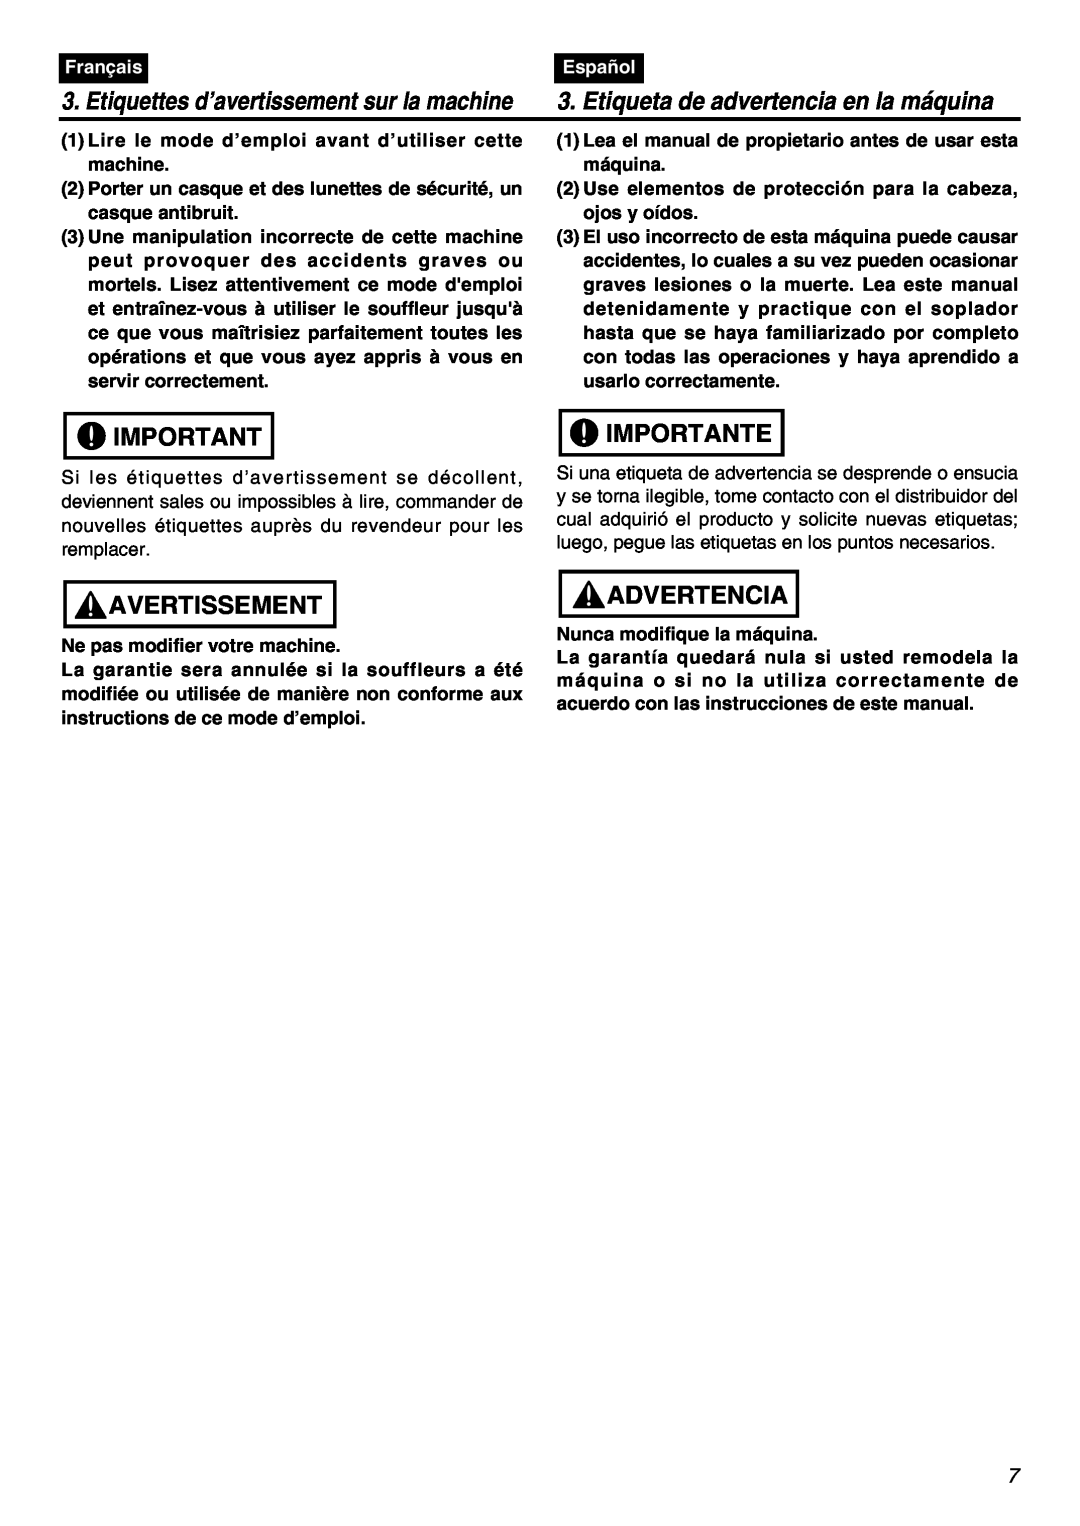 Zenoah EBZ8001RH-CA Avertissement, Importante, Advertencia, Etiquettes d’avertissement sur la machine, Français, Español 